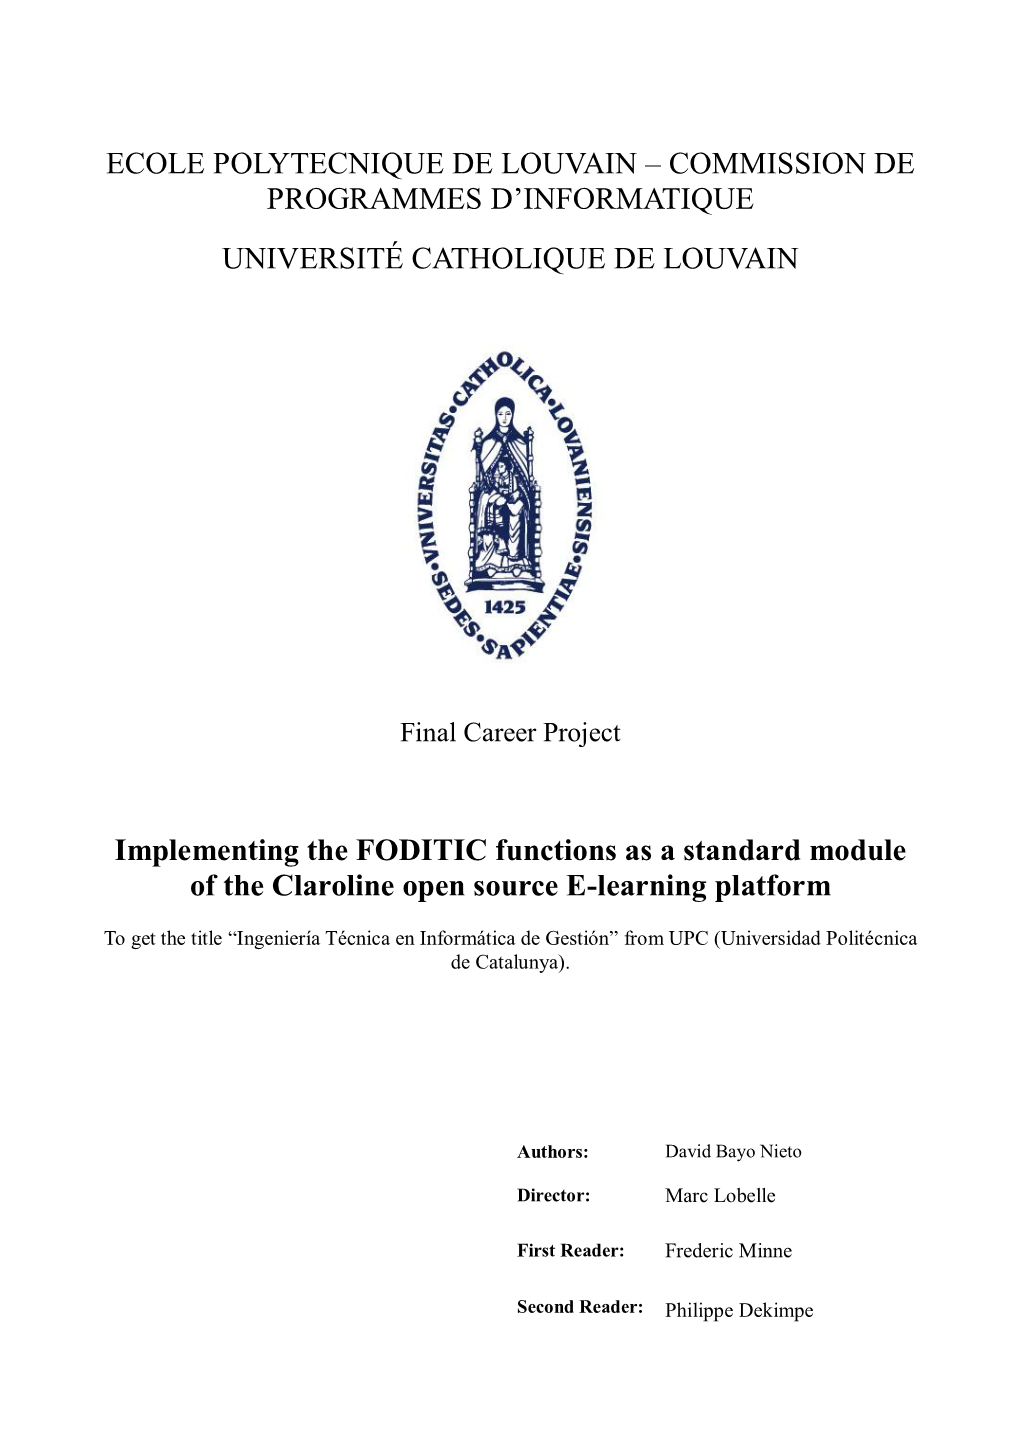 ECOLE POLYTECNIQUE DE LOUVAIN – COMMISSION DE PROGRAMMES D‟INFORMATIQUE UNIVERSITÉ CATHOLIQUE DE LOUVAIN Implementing the F